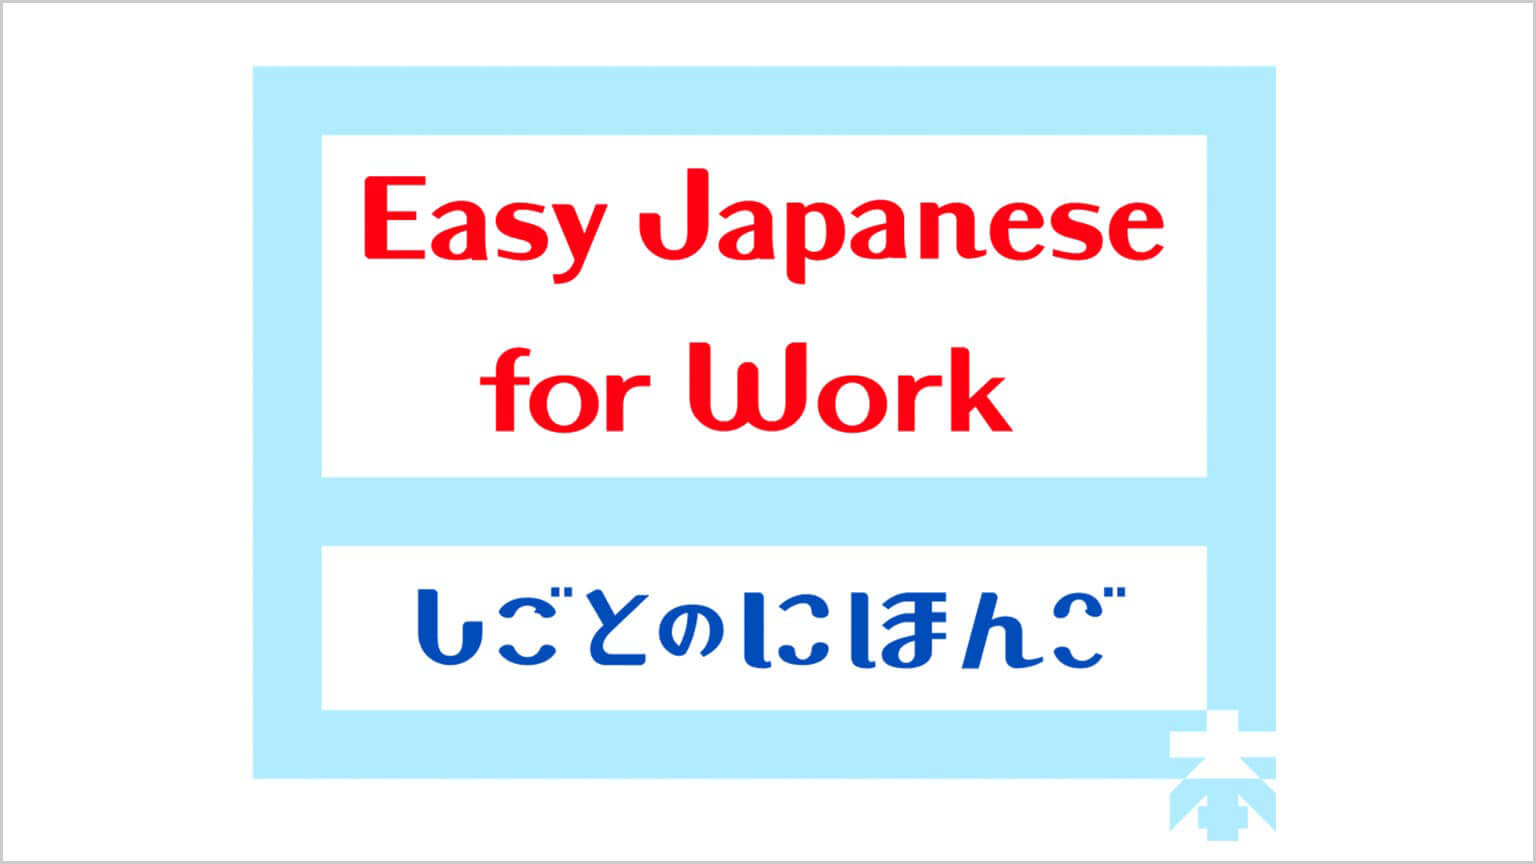 簡明日語～職場篇～
Easy Japanese for Work